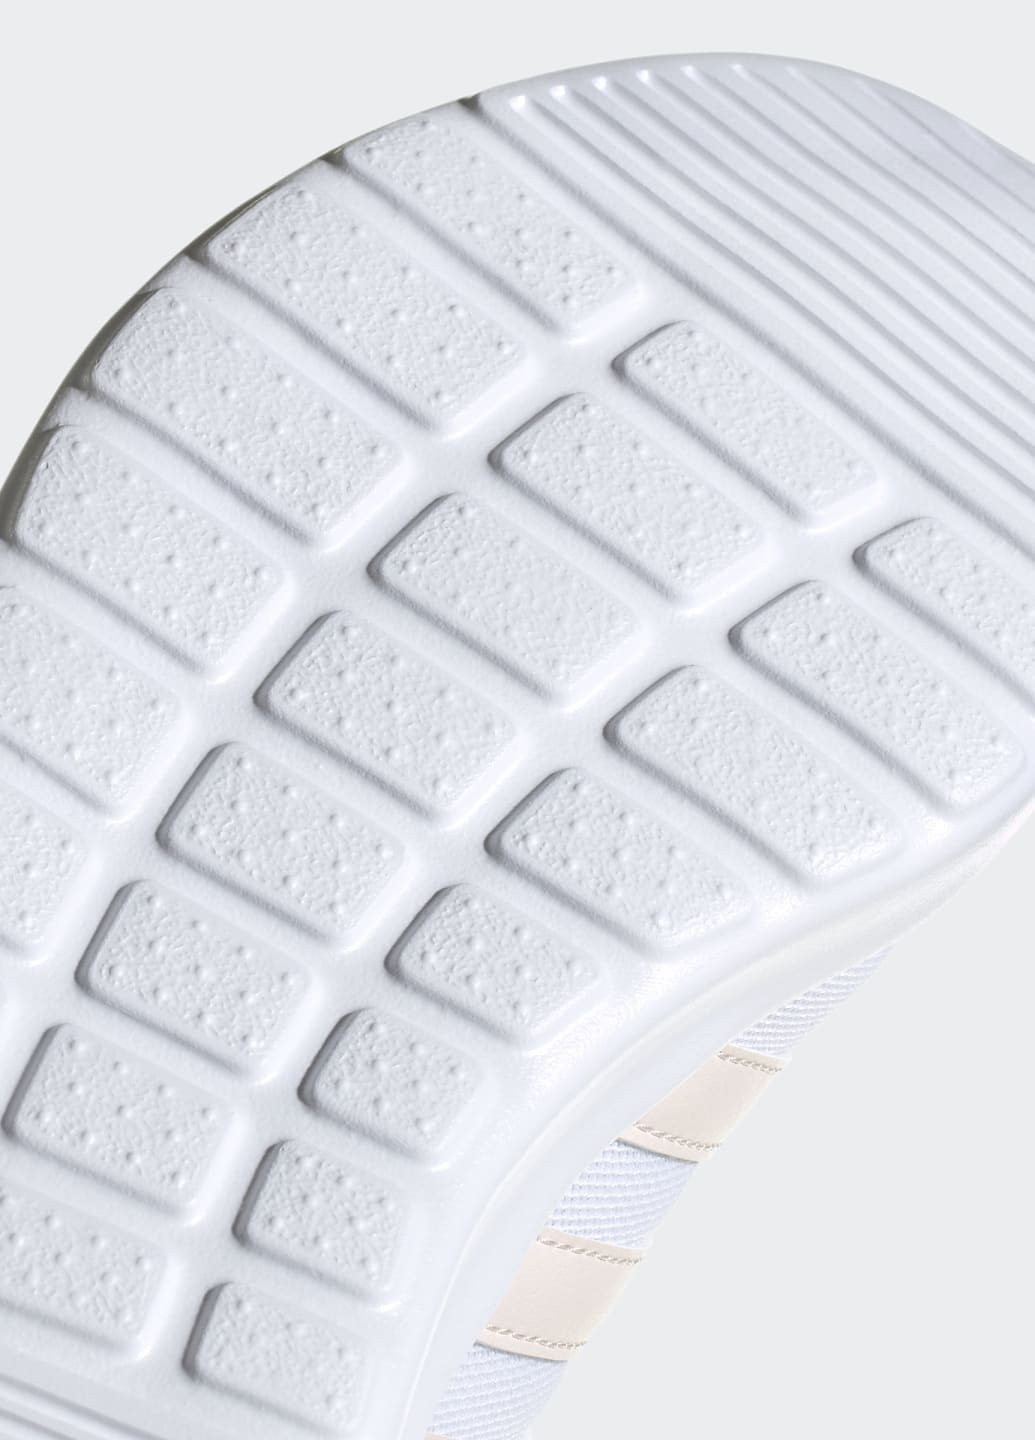 Білі всесезонні кросівки lite racer 3.0 adidas